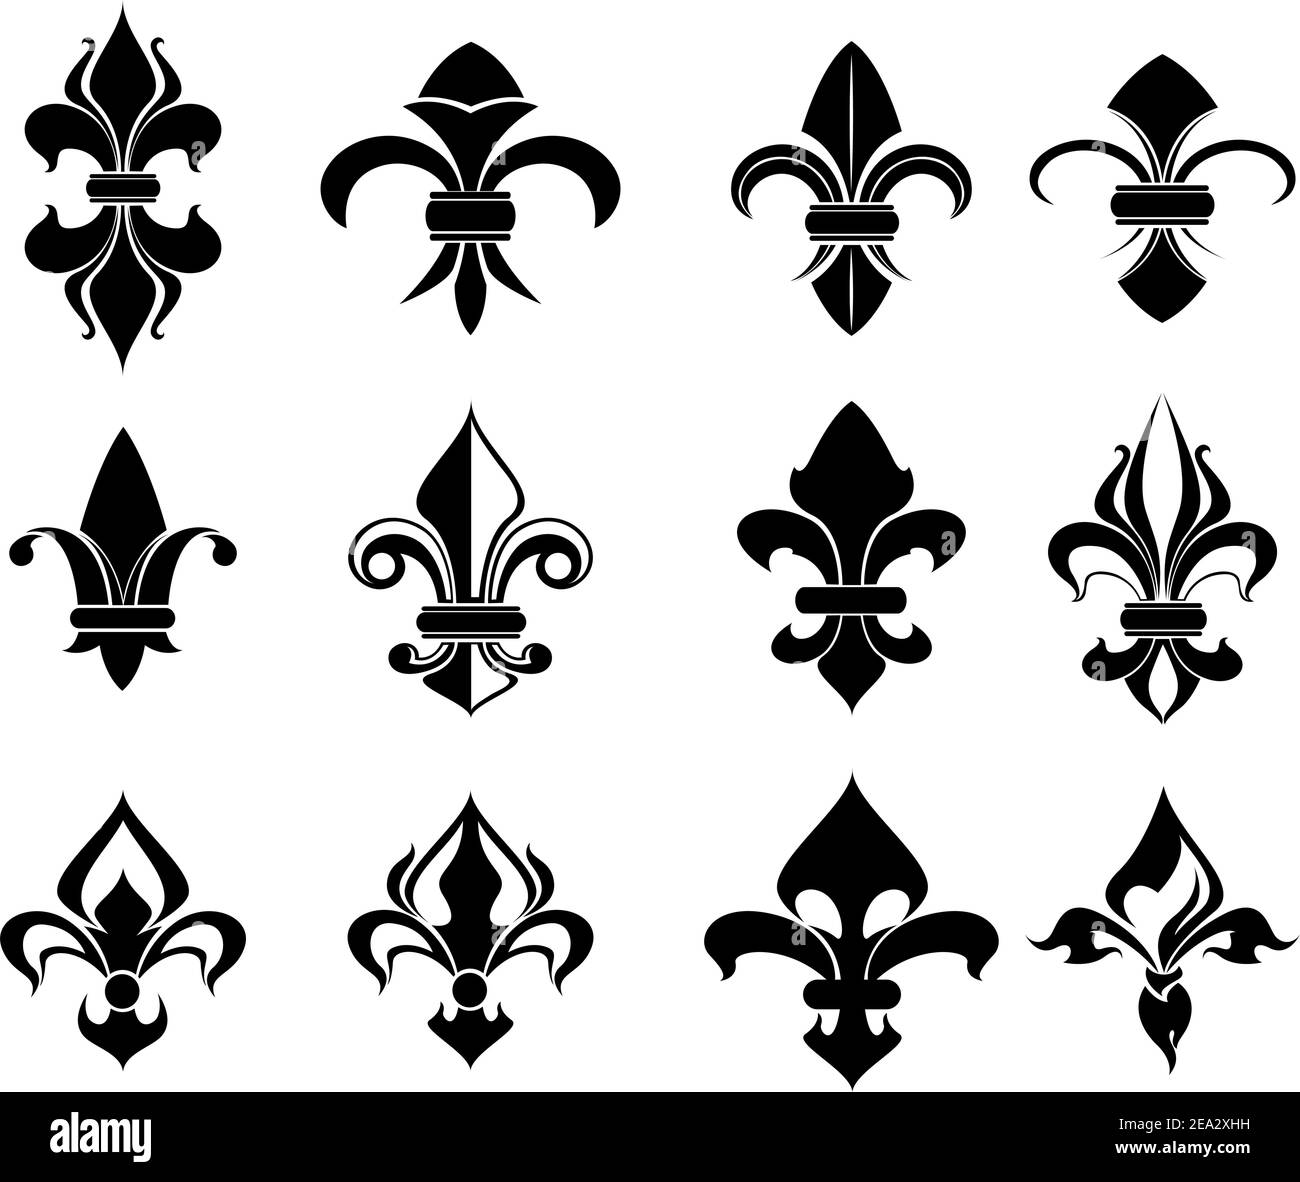 Royal giglio francese simboli per progettare e decorare Illustrazione Vettoriale